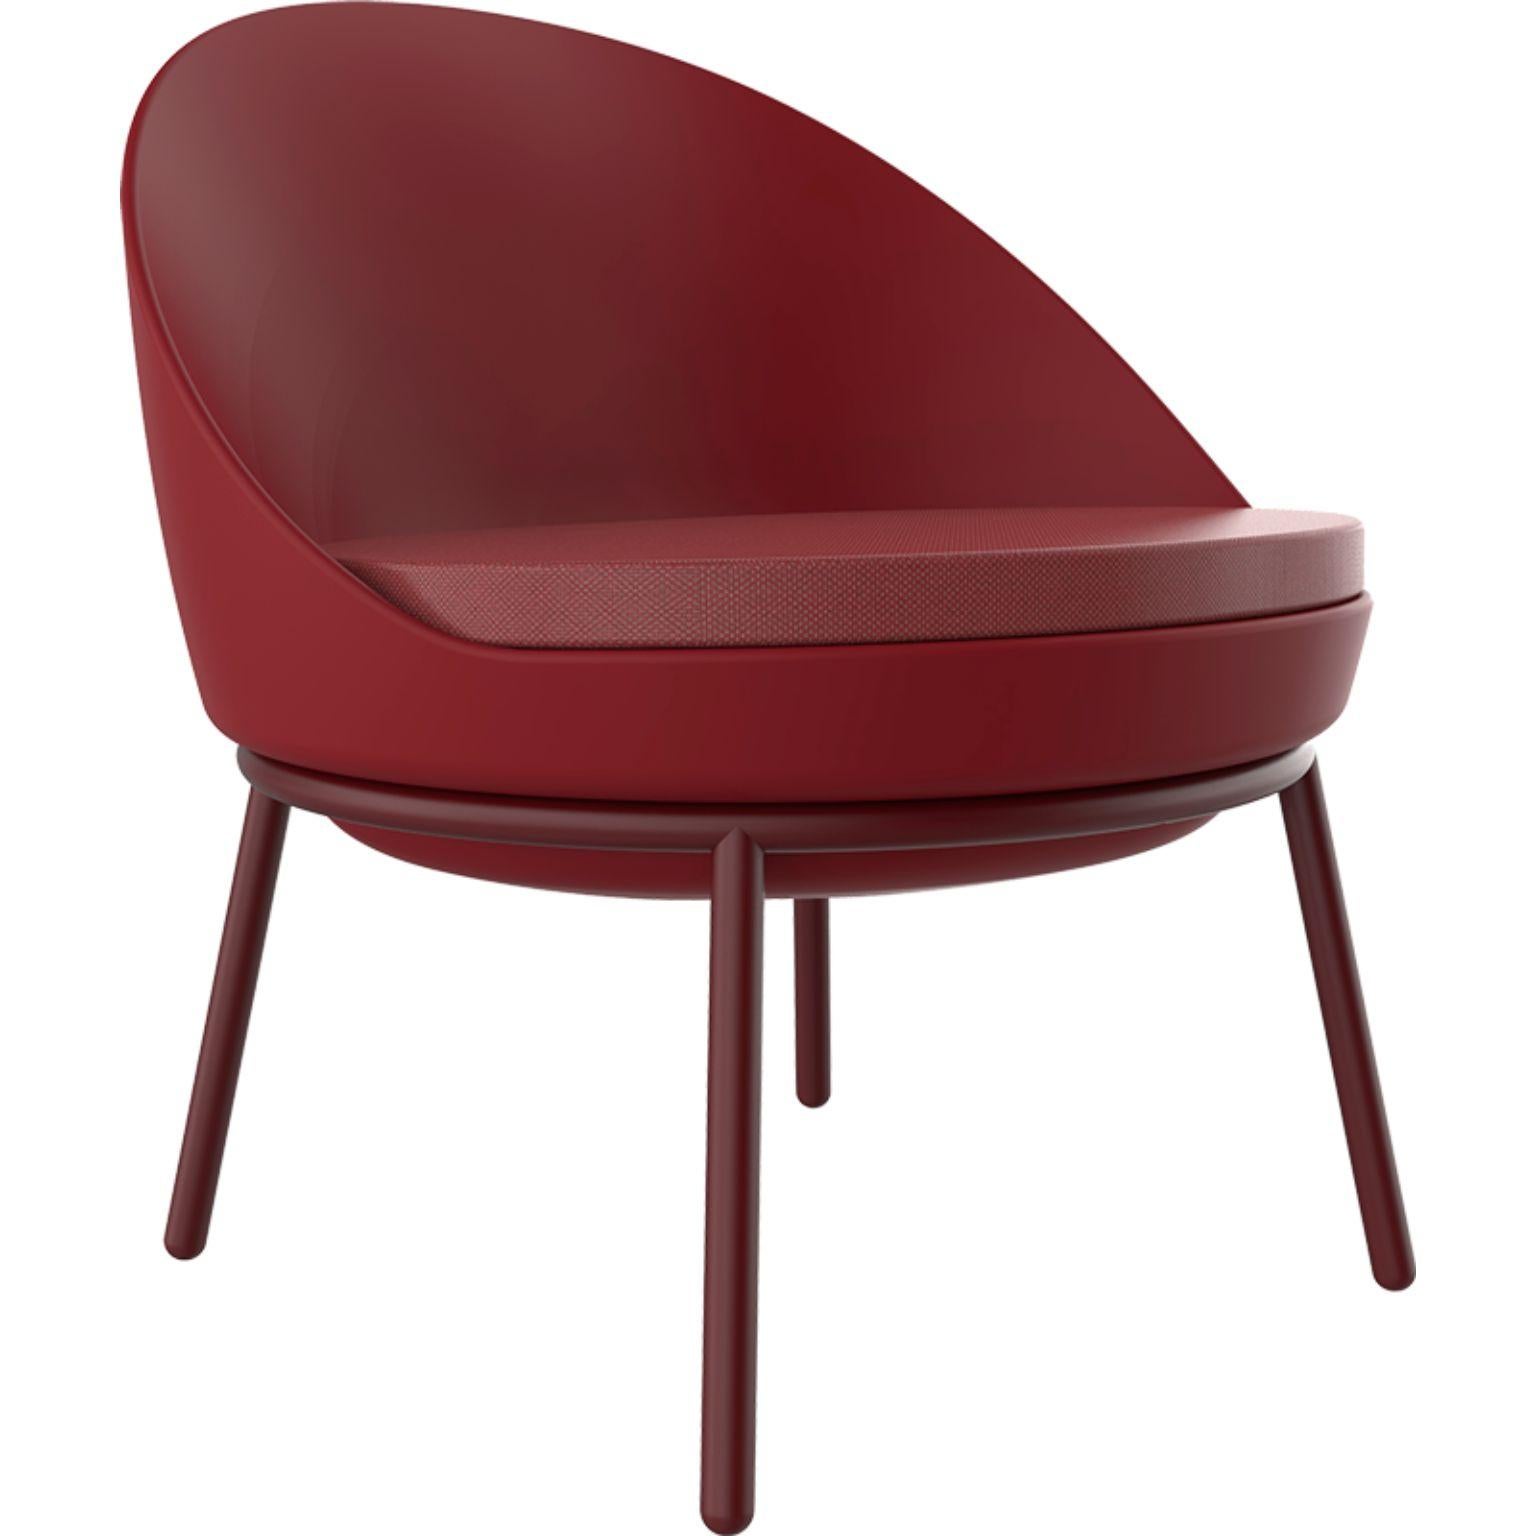 Burgunderfarbener Loungesessel mit Kissen von Mowee.
Abmessungen: T70 x B66 x H75,5 cm
MATERIAL: Polyethylen, rostfreier Stahl
Gewicht: 10.5 kg
Auch in verschiedenen Farben und Ausführungen erhältlich.

Lace ist eine Kollektion von Möbeln, die